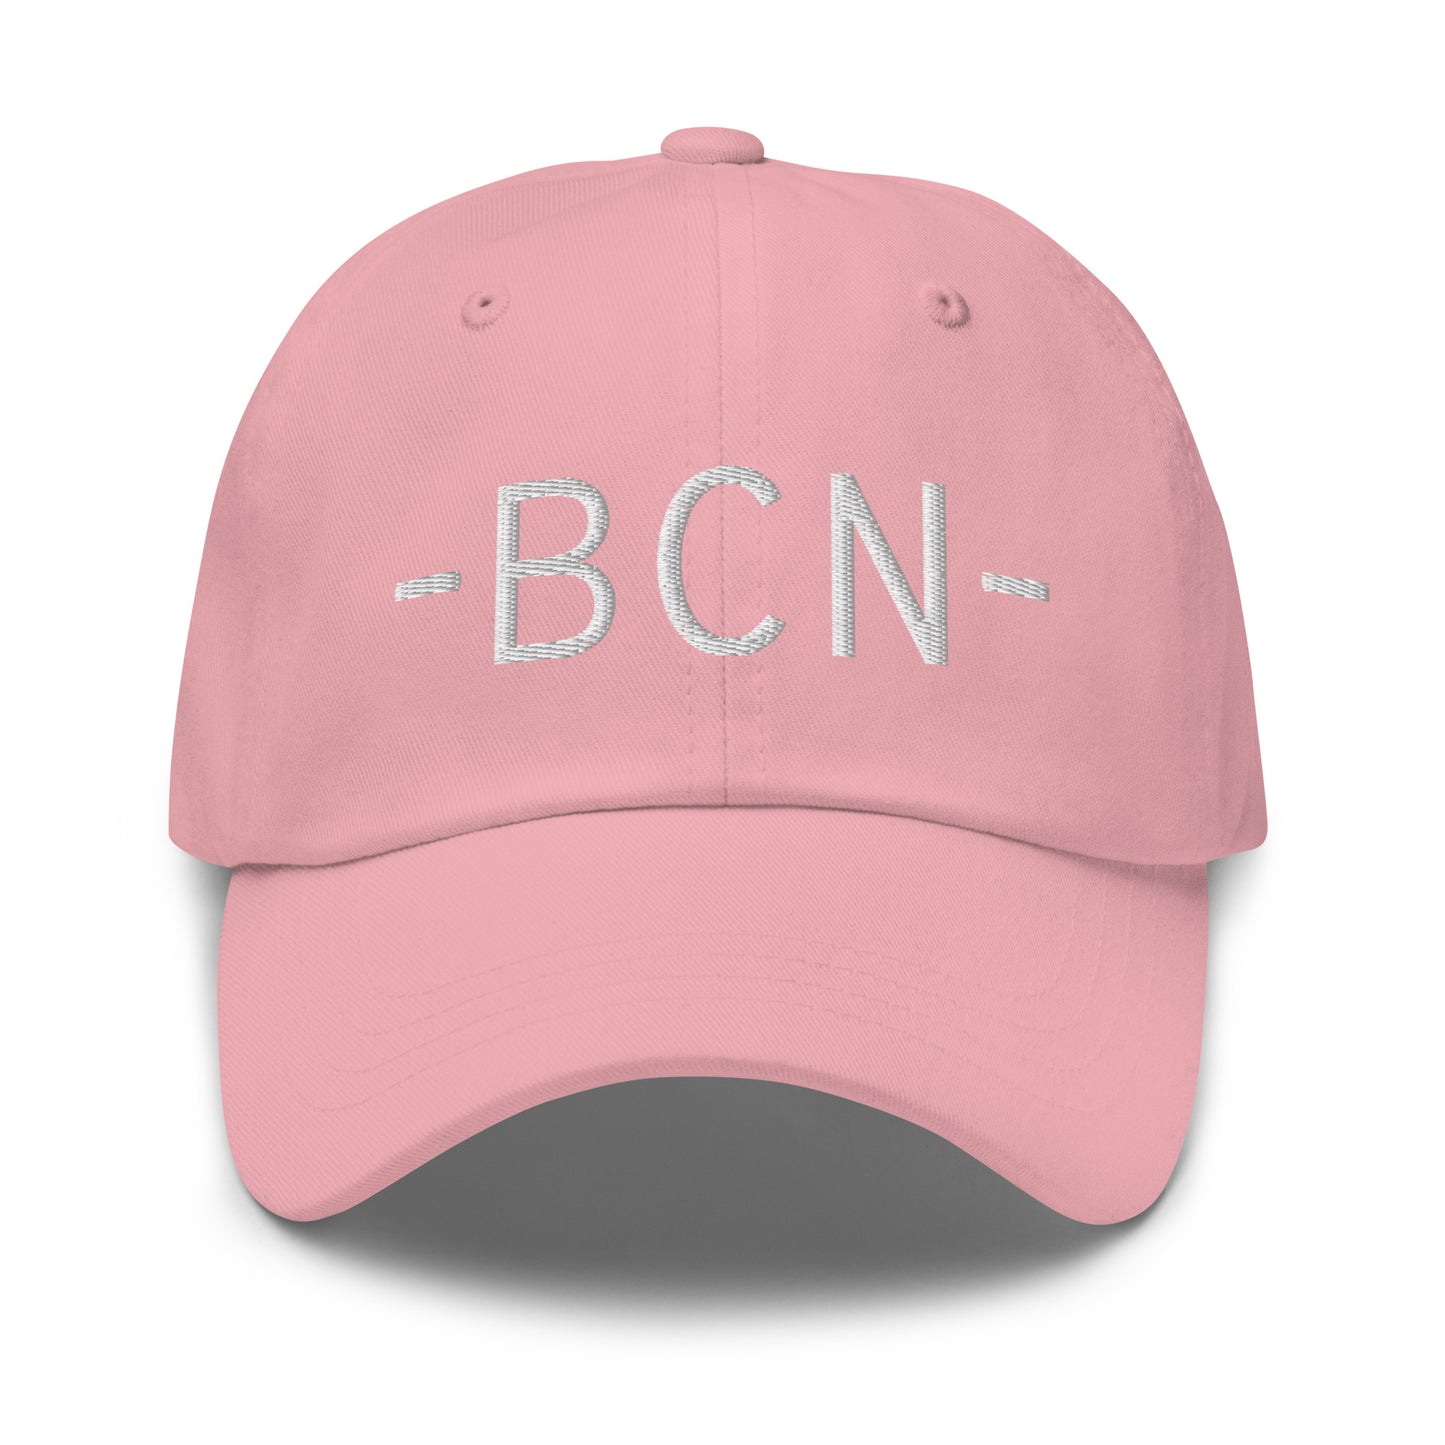 Souvenir Baseball Cap - White • BCN Barcelona • YHM Designs - Image 25